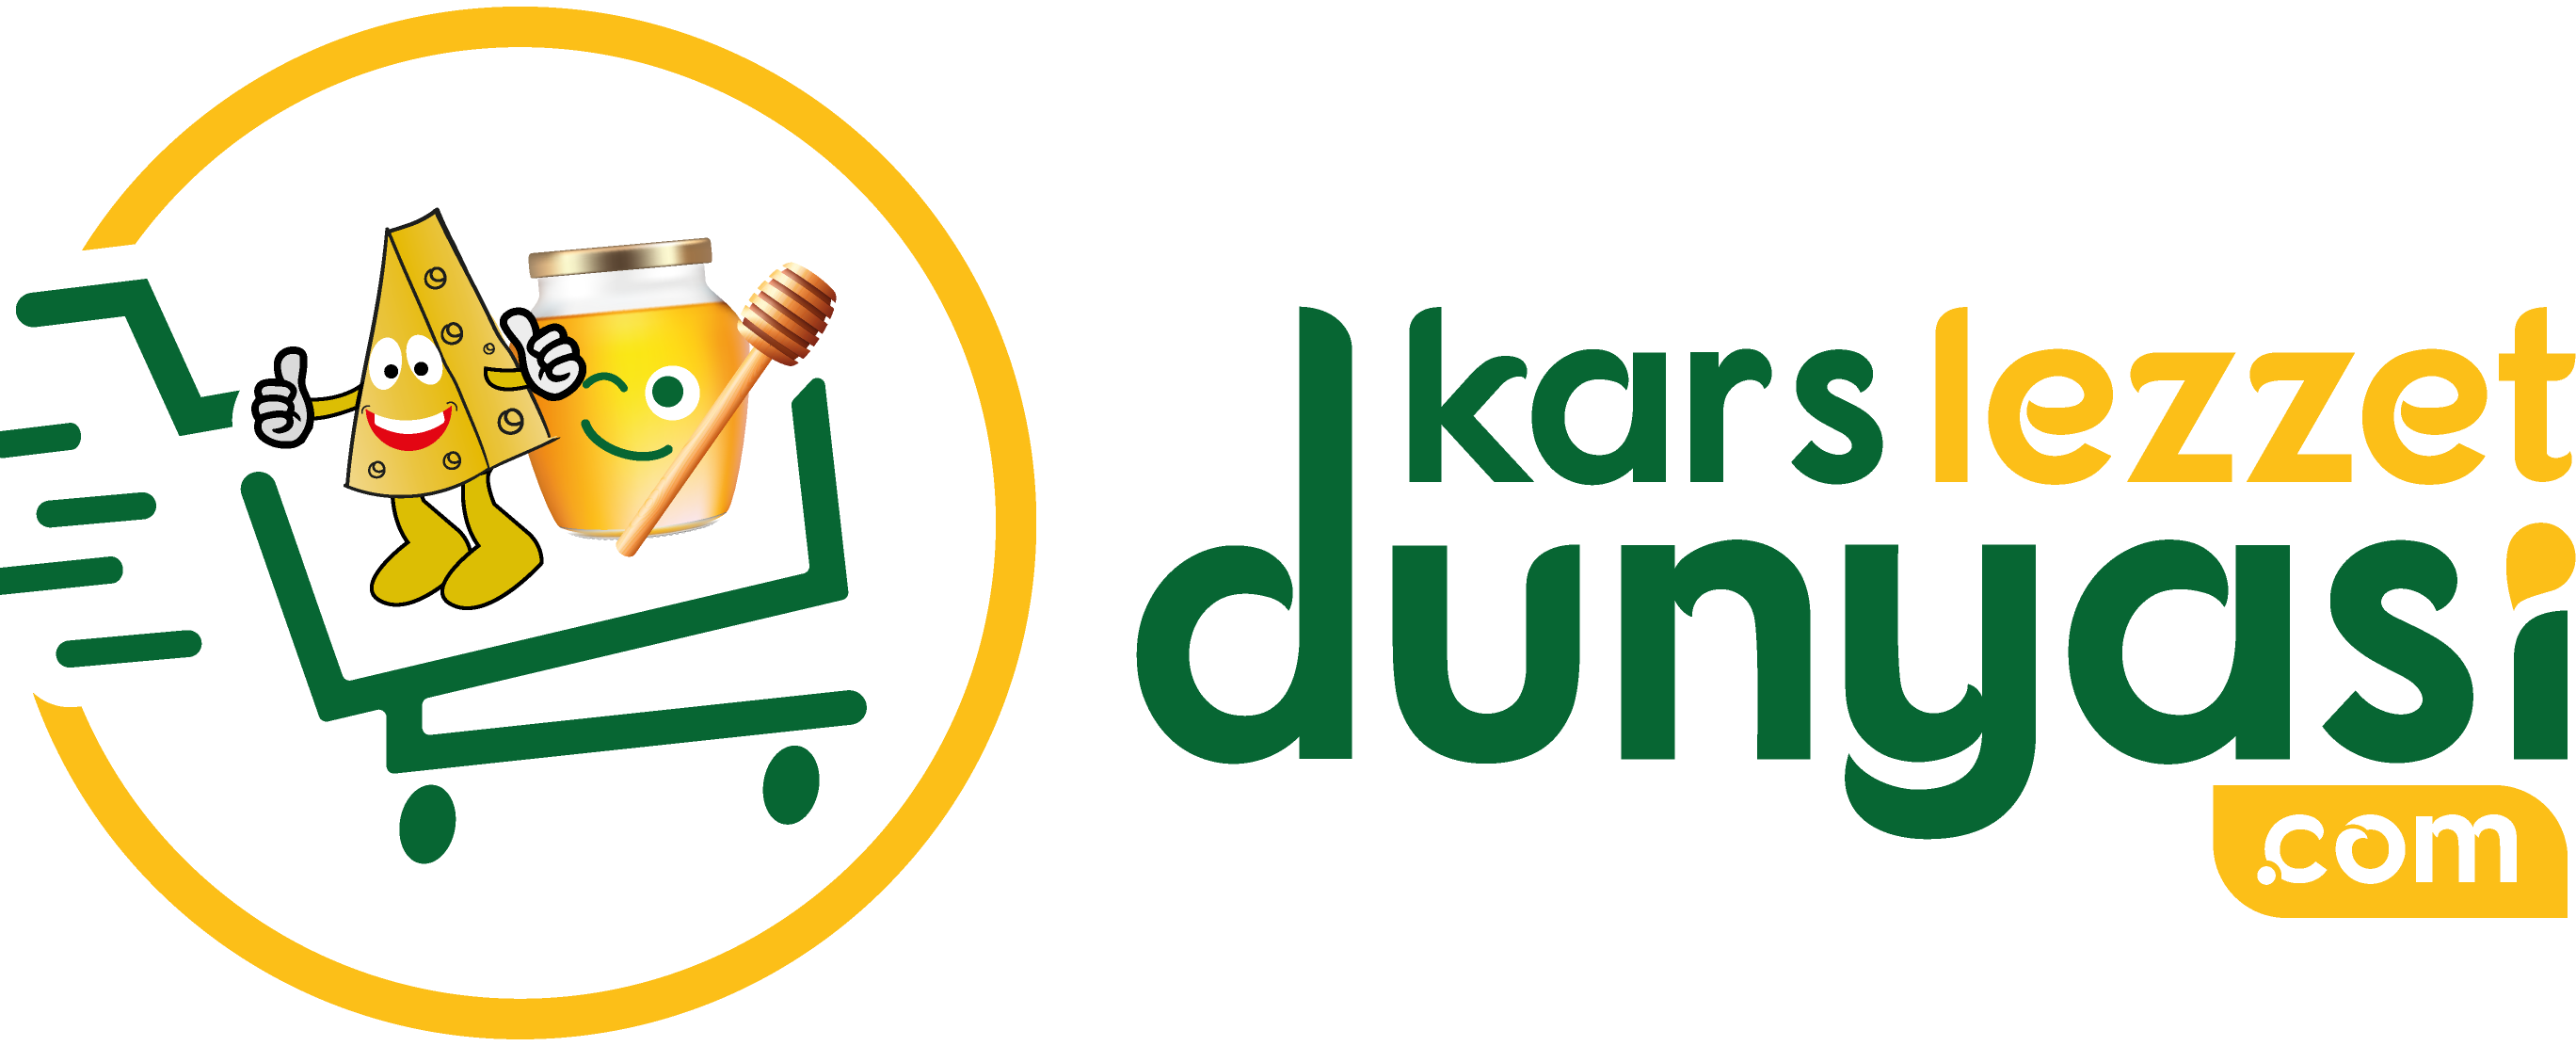 www.karslezzetdunyasi.com logo